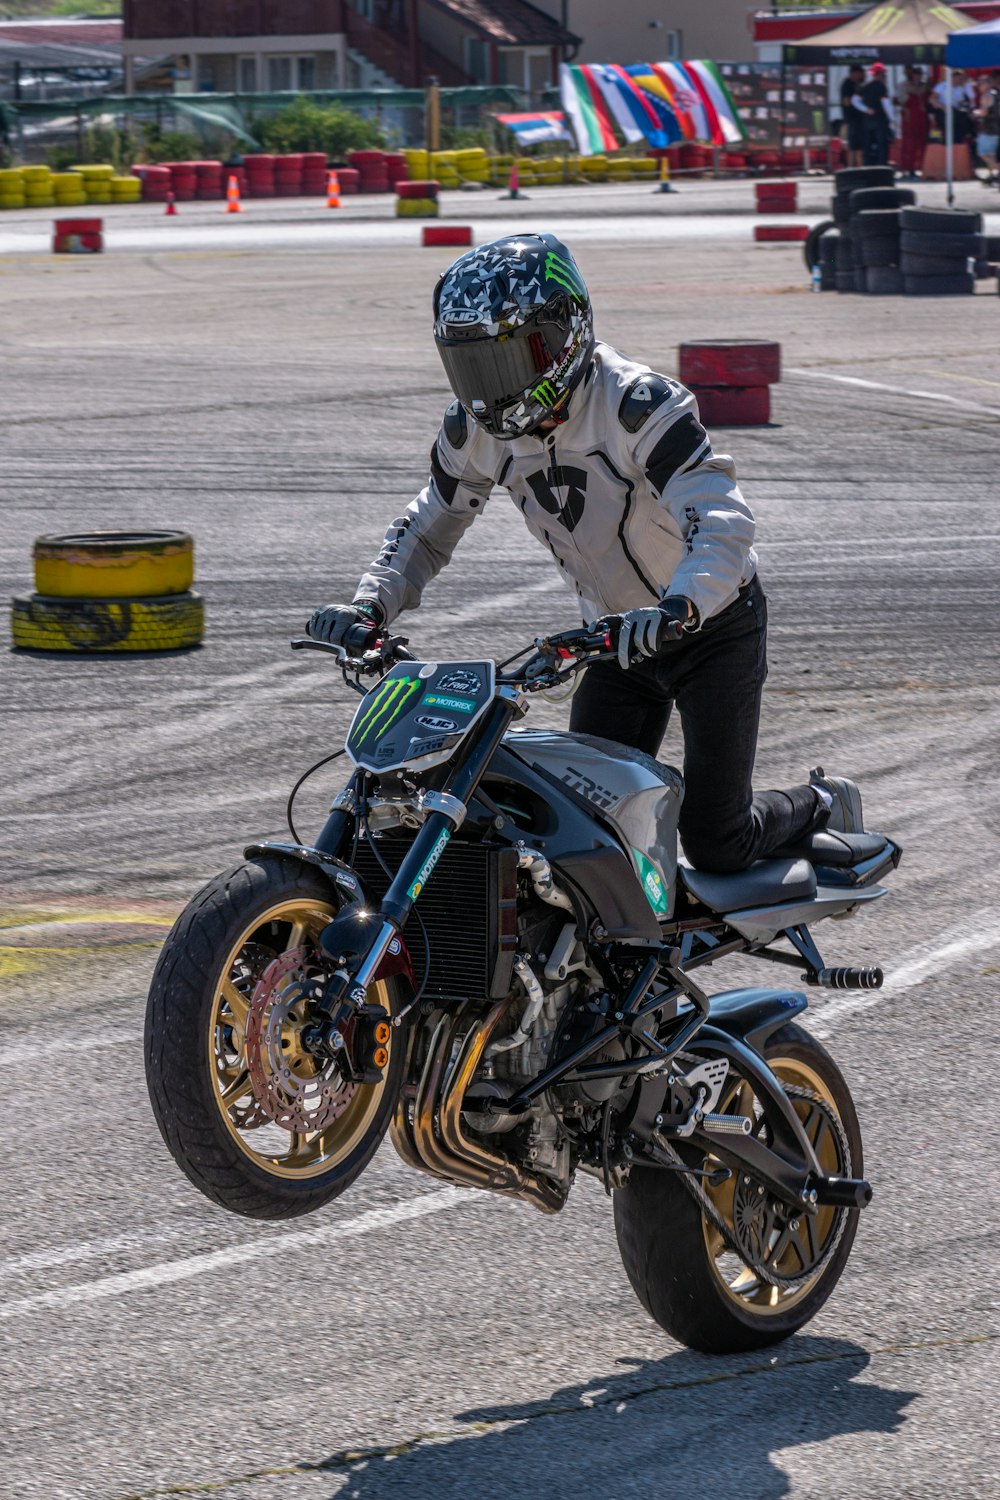 un homme conduisant une moto au sommet d’une piste de course